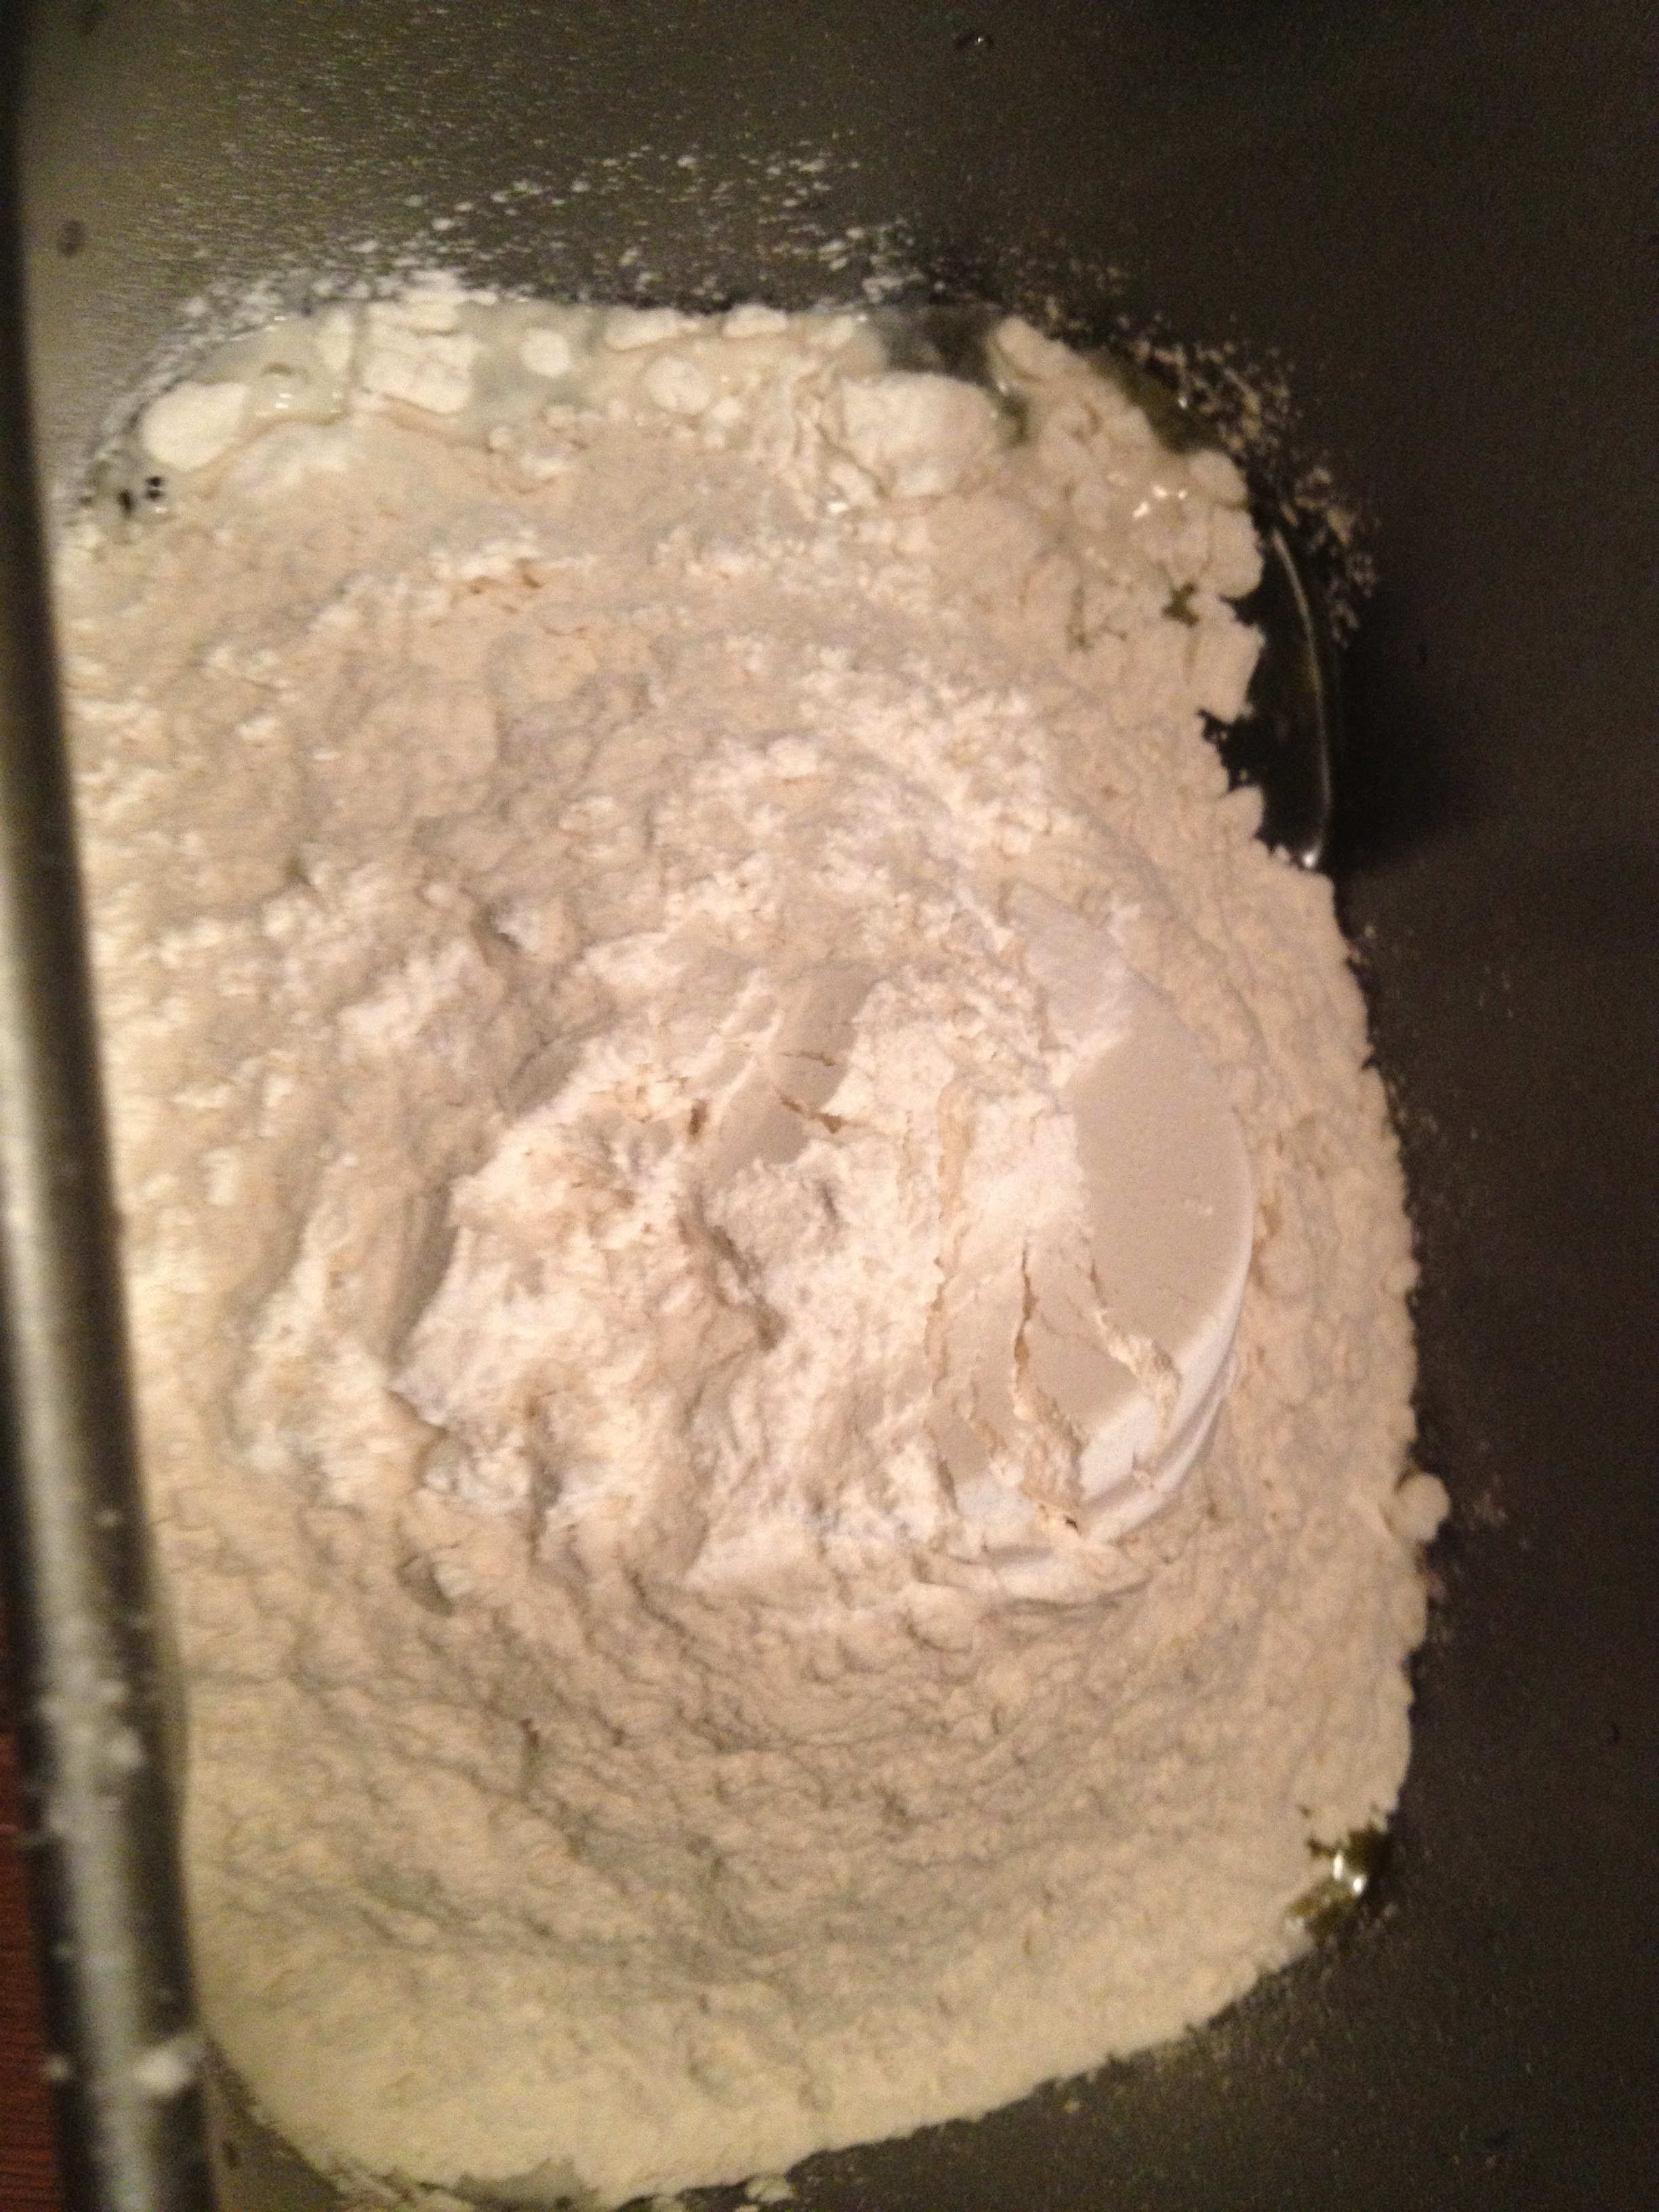 Bread Machine Recipes All Purpose Flour
 pizza dough in bread machine with all purpose flour